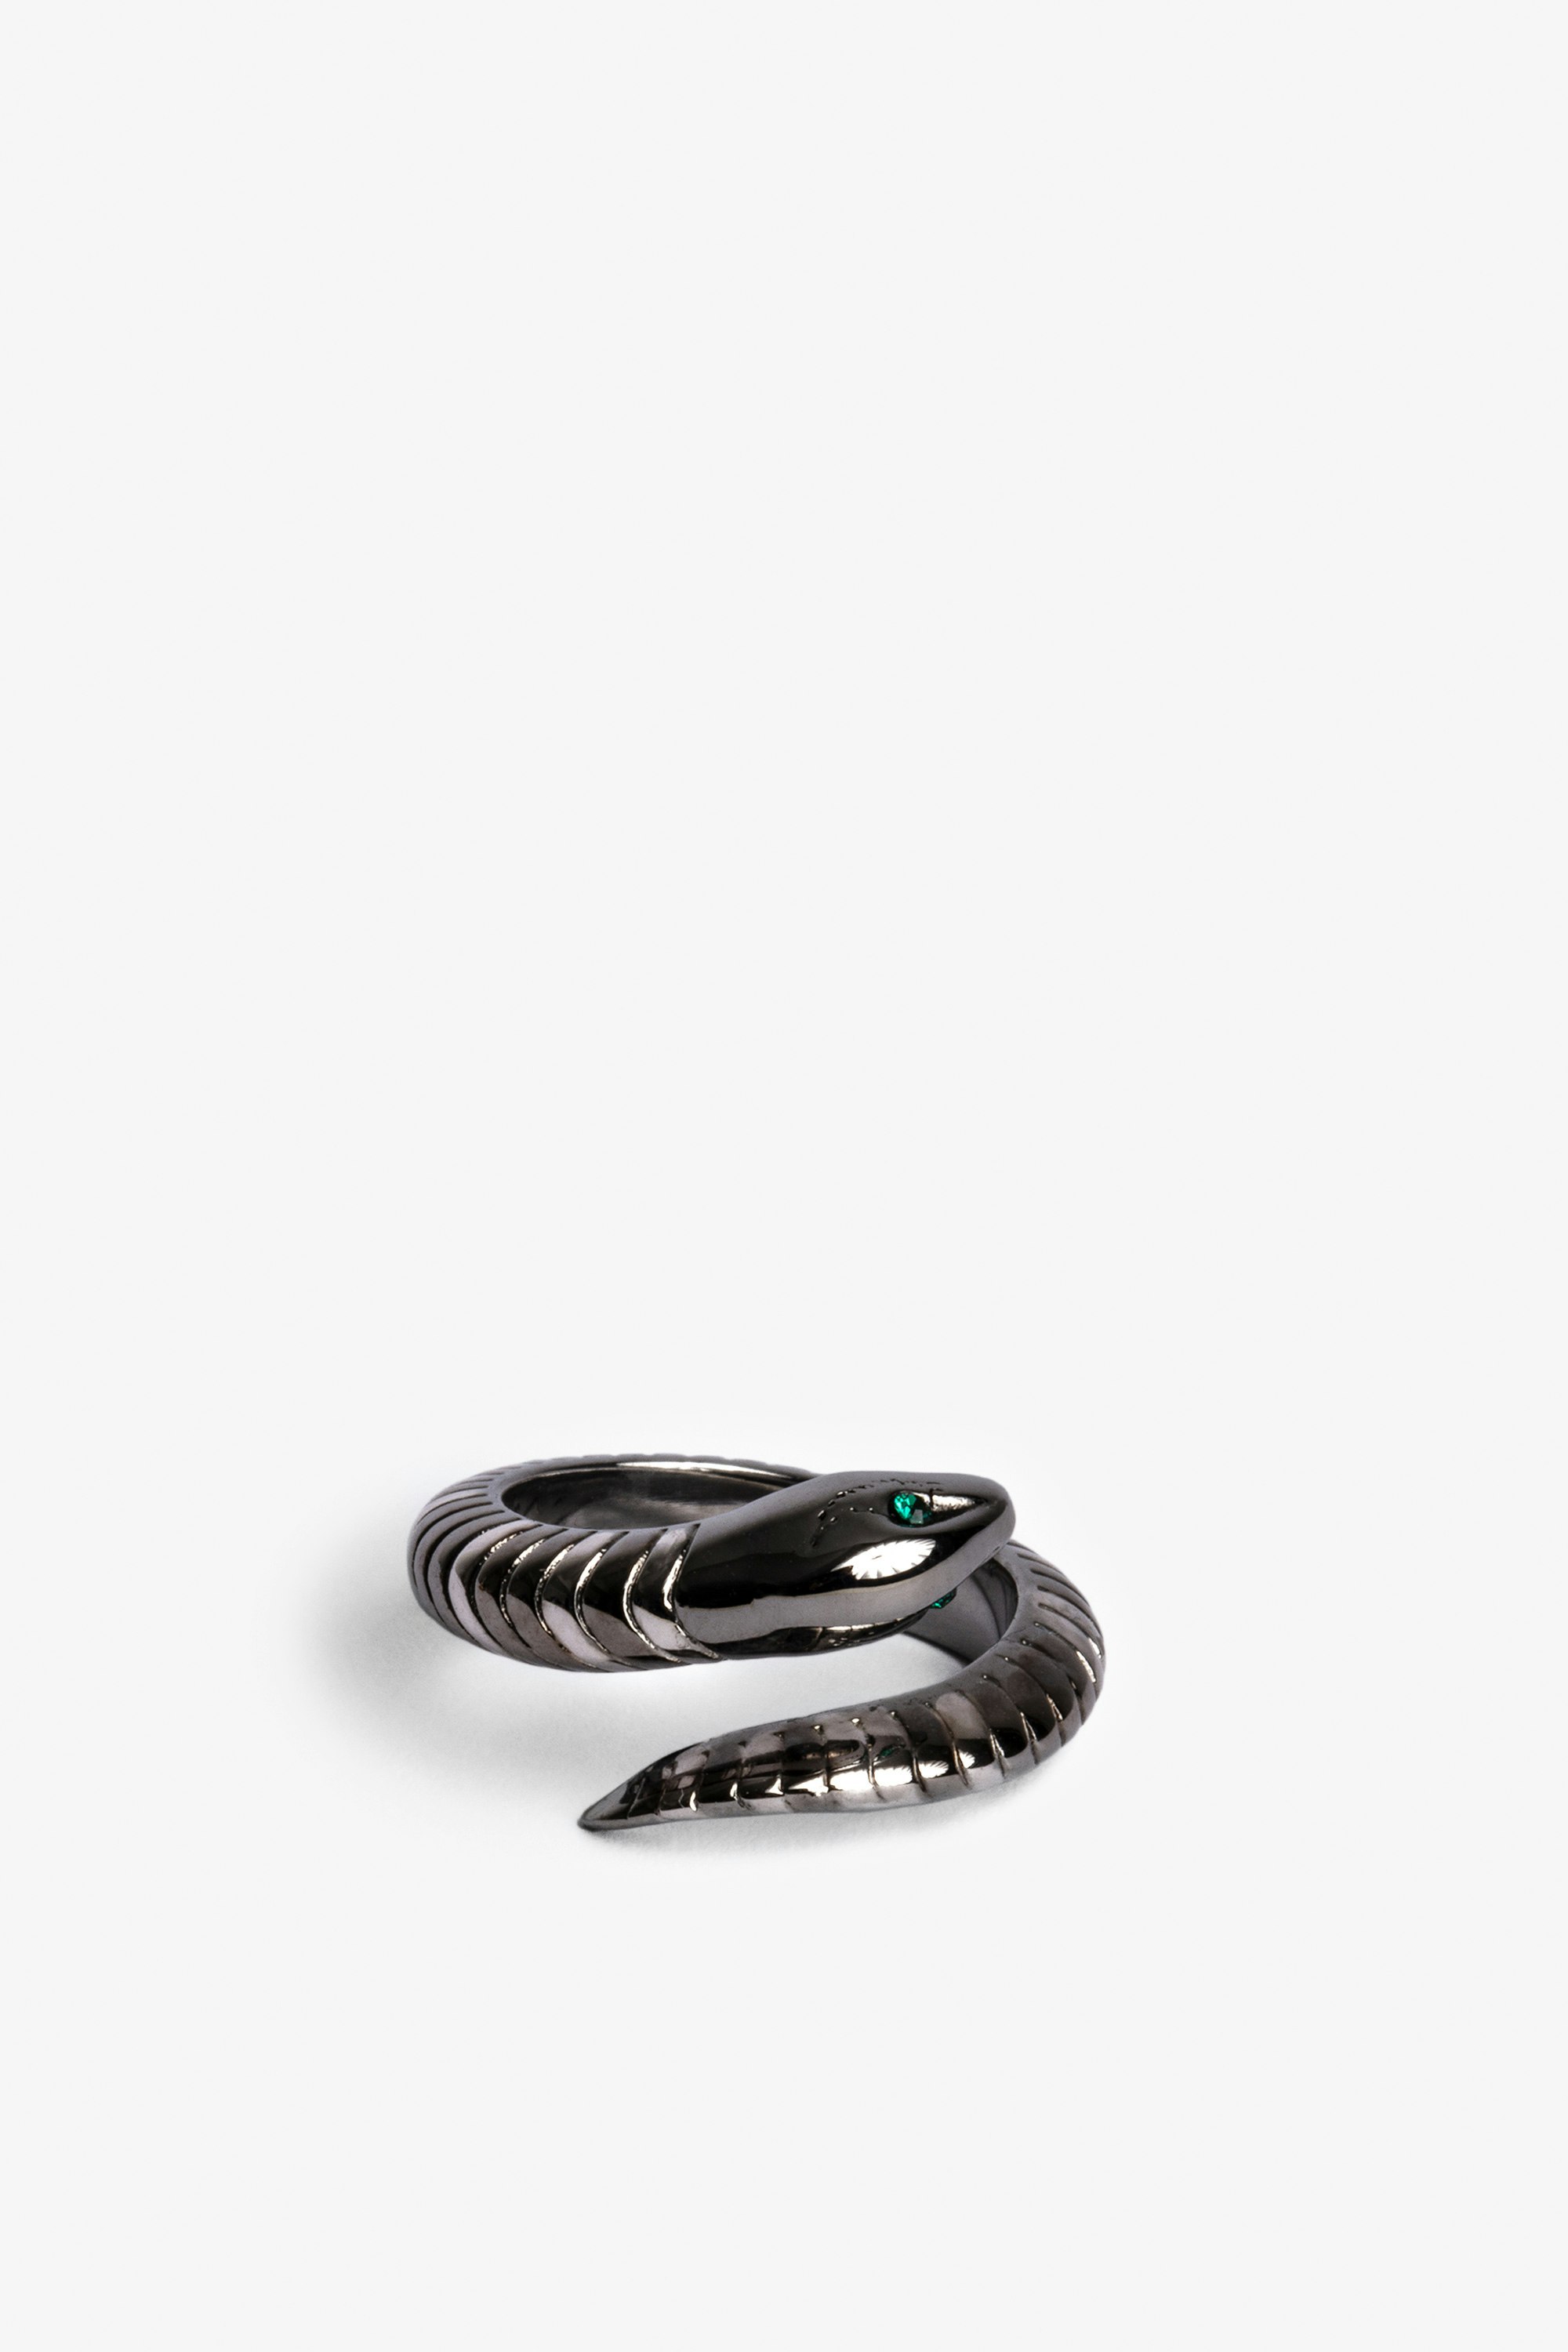 Snake 指輪 サーペント リング シルバーブラス レディース